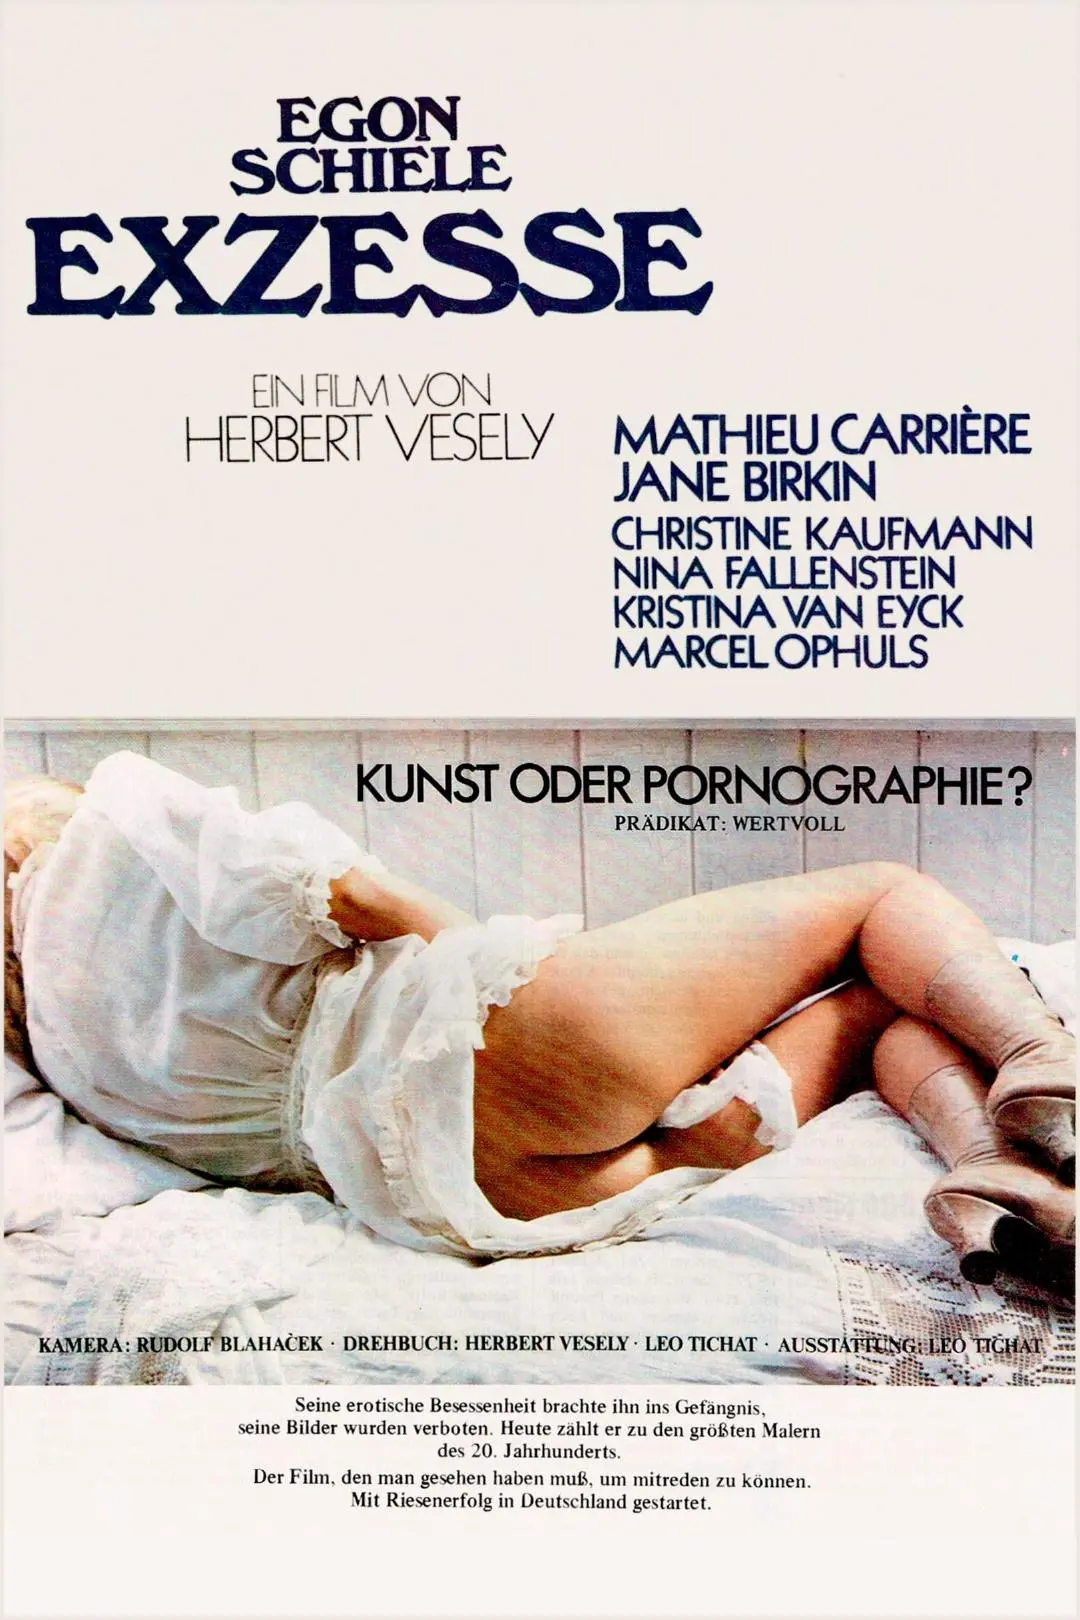 Egon Schiele: Excess and Punishment_peliplat